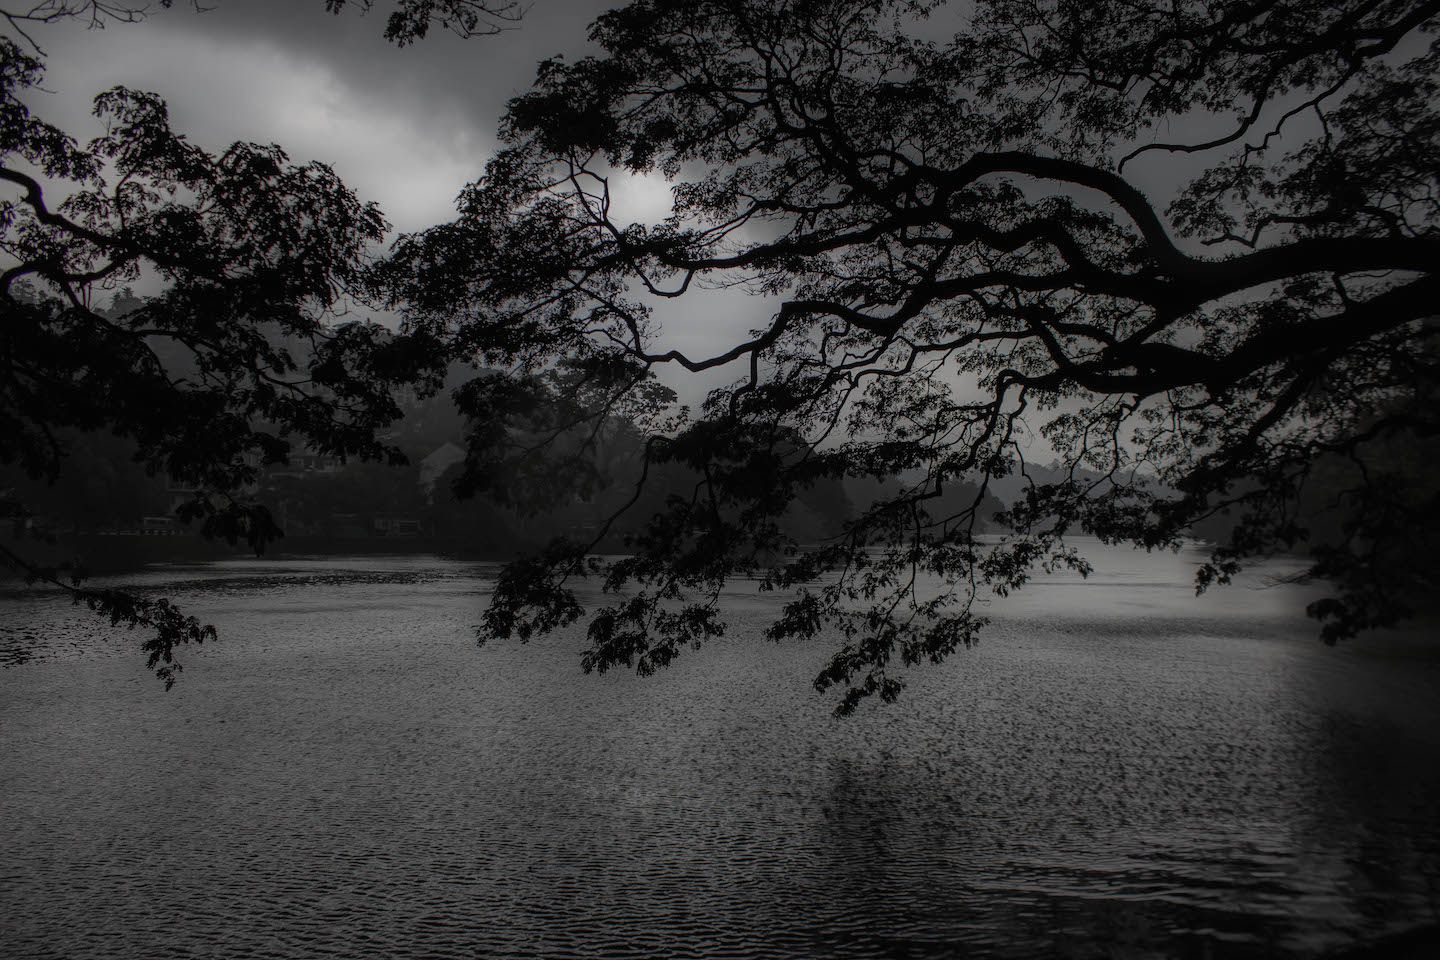 Ominous sky in Kandy, Sri Lanka